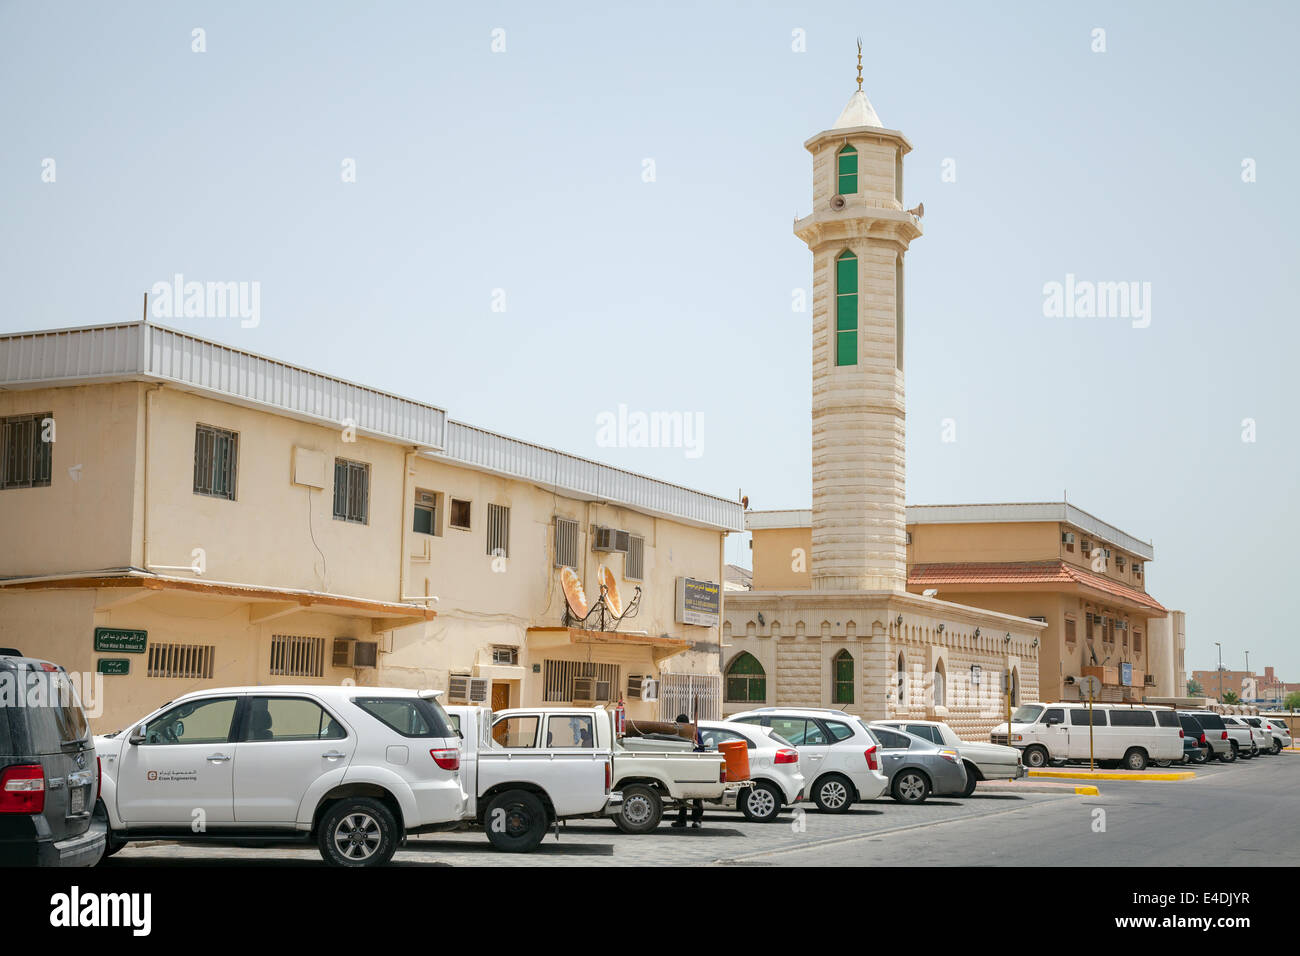 RAS TANURA, Arabia Saudita - 10 Maggio 2014: Street view con le automobili e minareto della moschea, Arabia Saudita Foto Stock